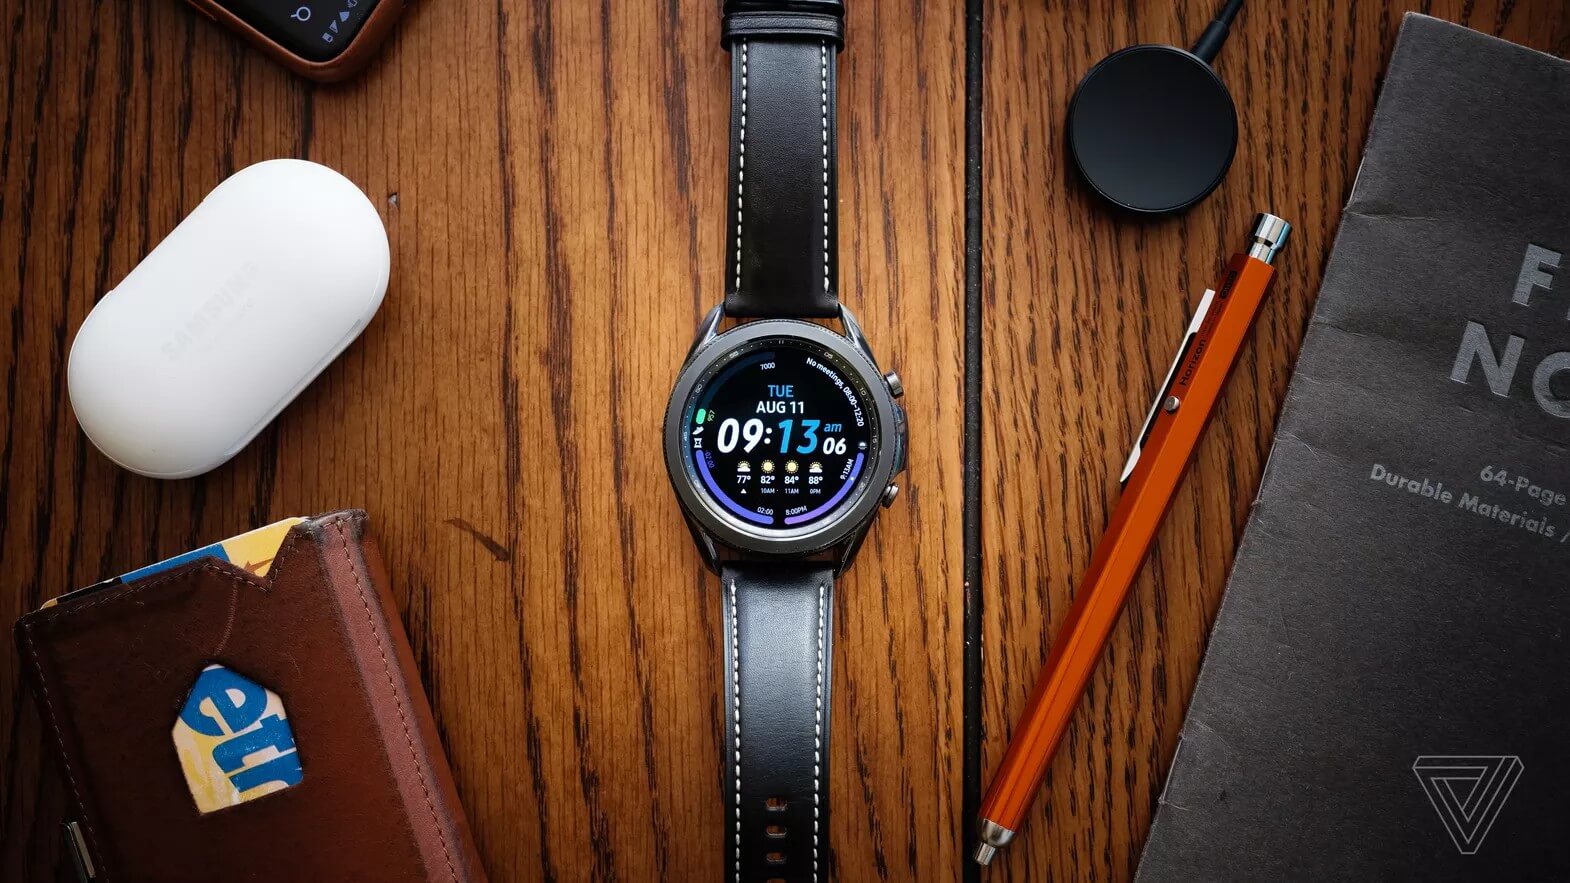 Samsung Galaxy Watch 3: Bạn đang tìm kiếm một chiếc đồng hồ thông minh đầy tính năng? Samsung Galaxy Watch 3 là giải pháp hoàn hảo! Với thiết kế sang trọng và tính năng thông minh hữu ích, chiếc đồng hồ này đáng để bạn dành thời gian để khám phá.